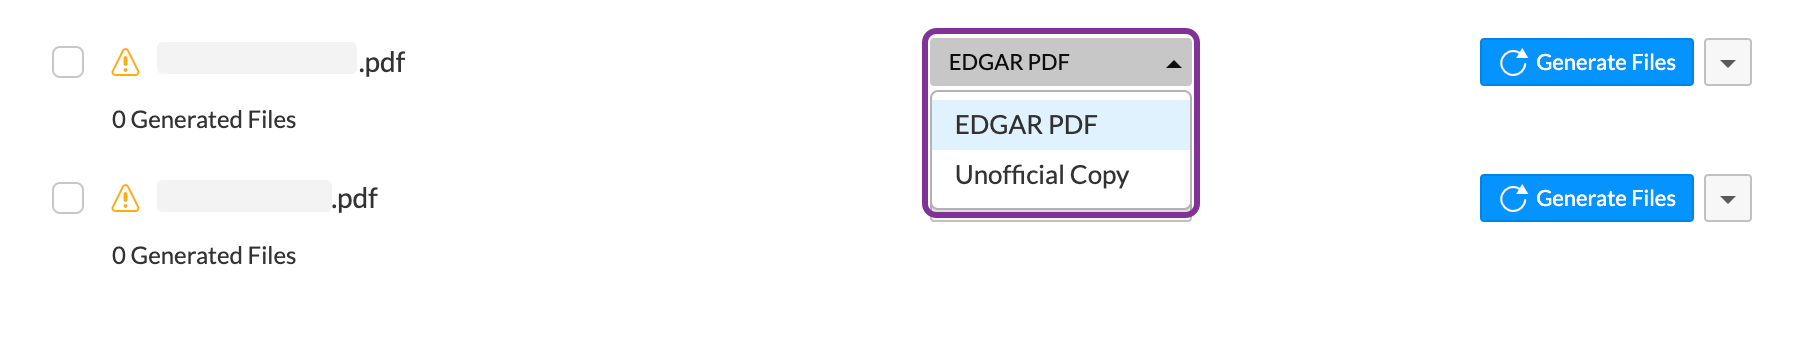 Select EDGAR PDF